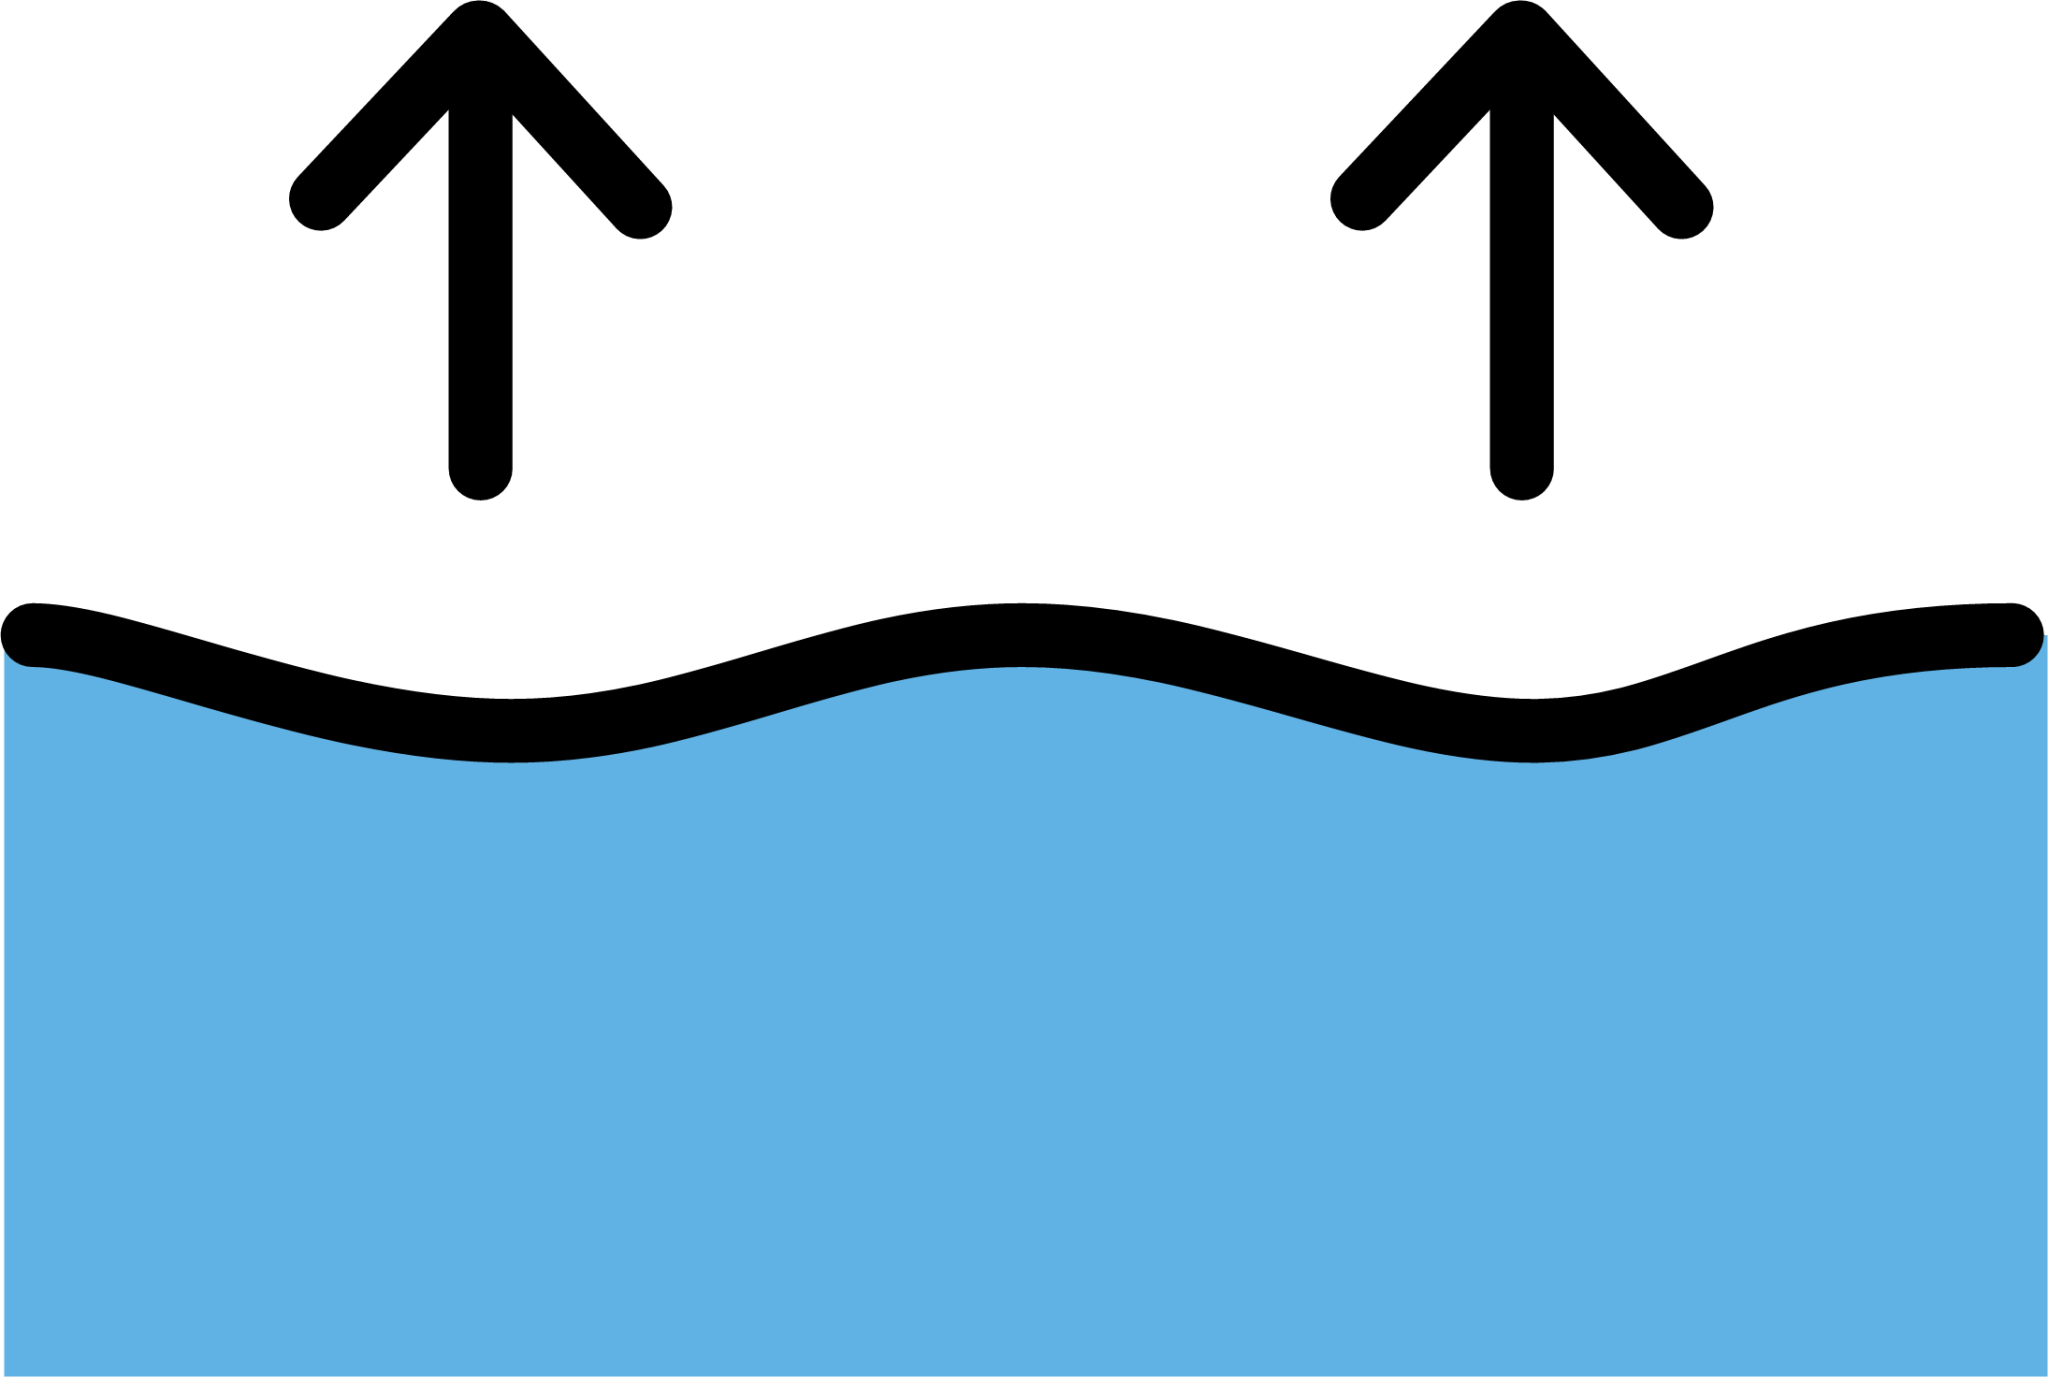 sea level rise emoji